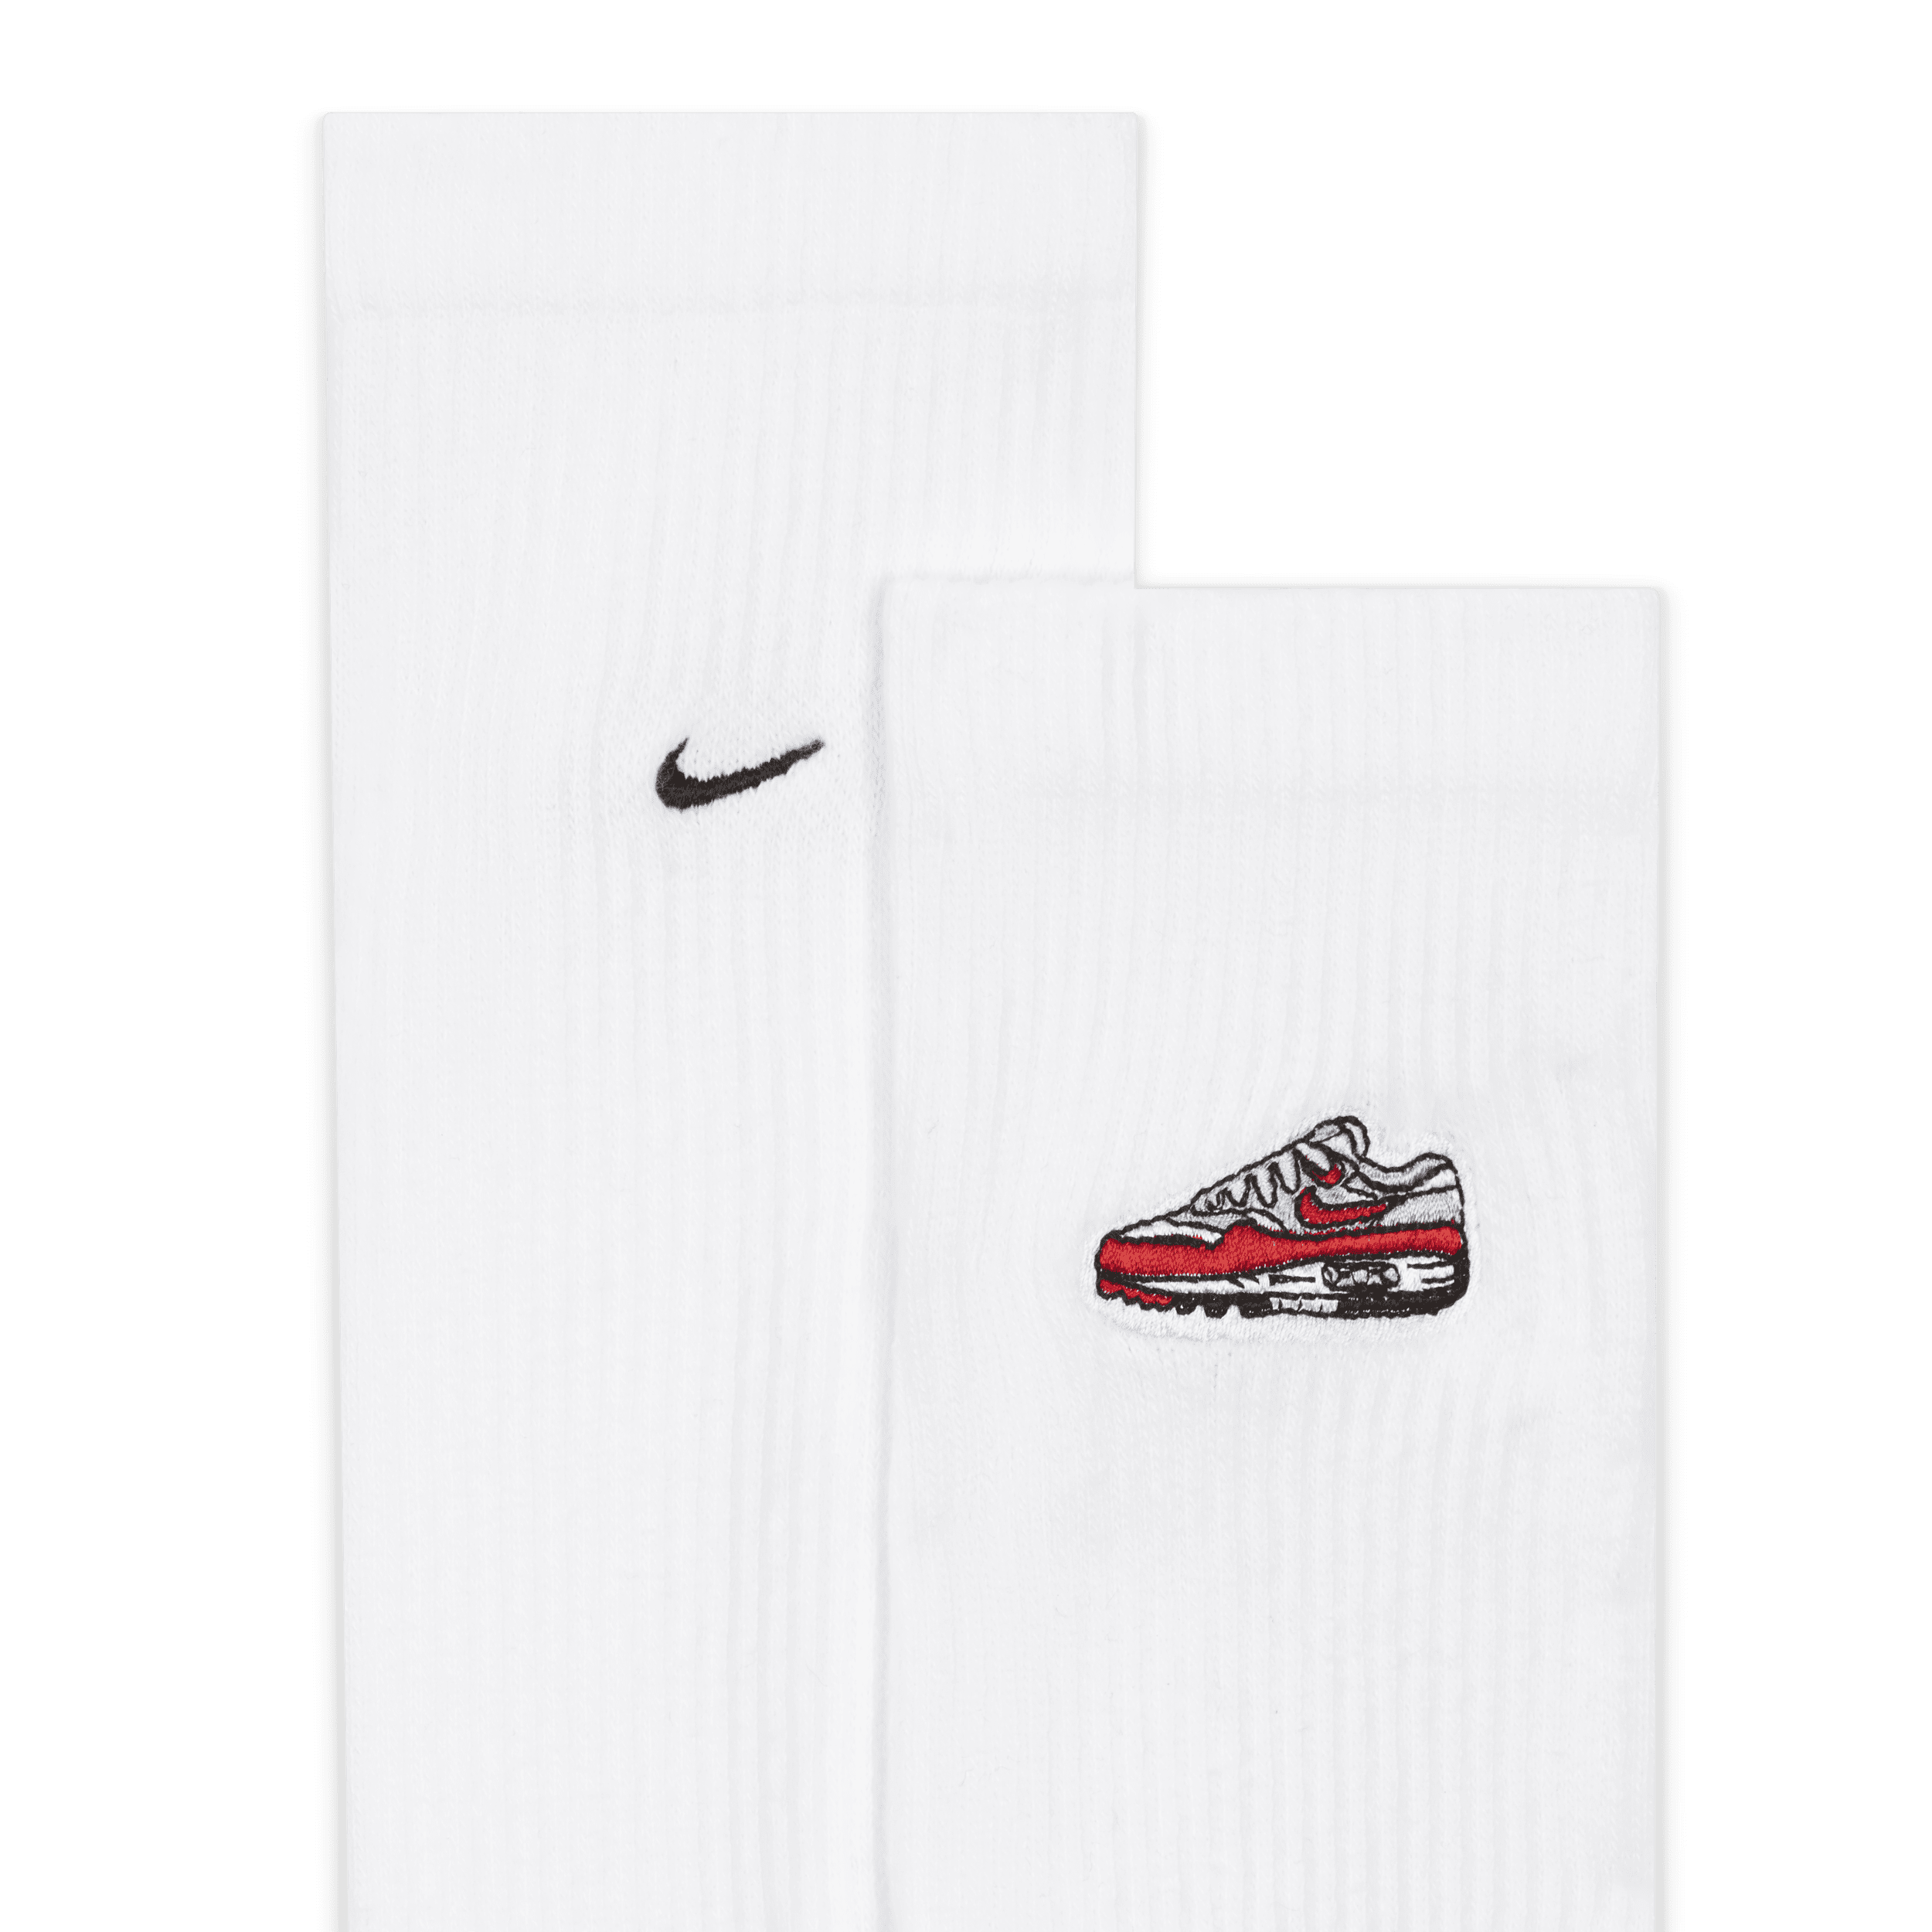 Nike Everyday Plus Crew sokken met demping (1 paar) Wit